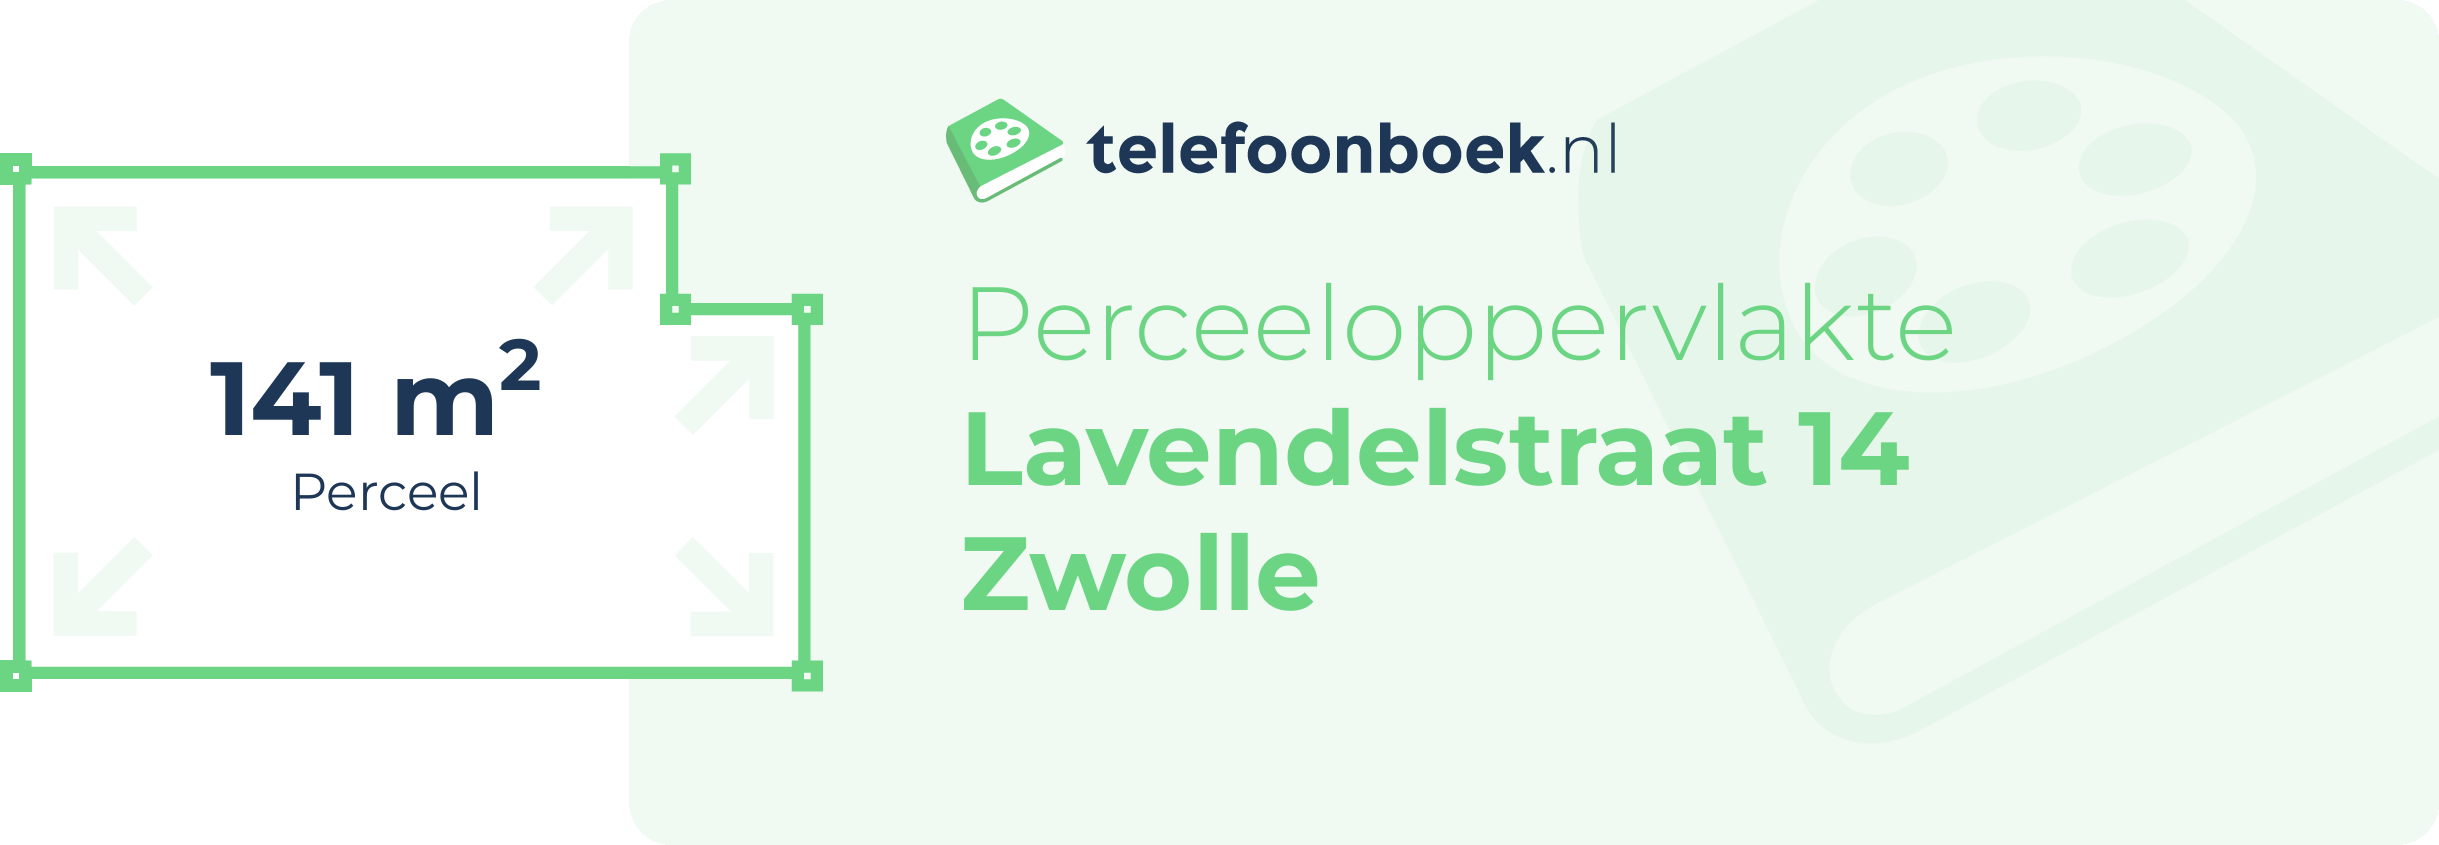 Perceeloppervlakte Lavendelstraat 14 Zwolle